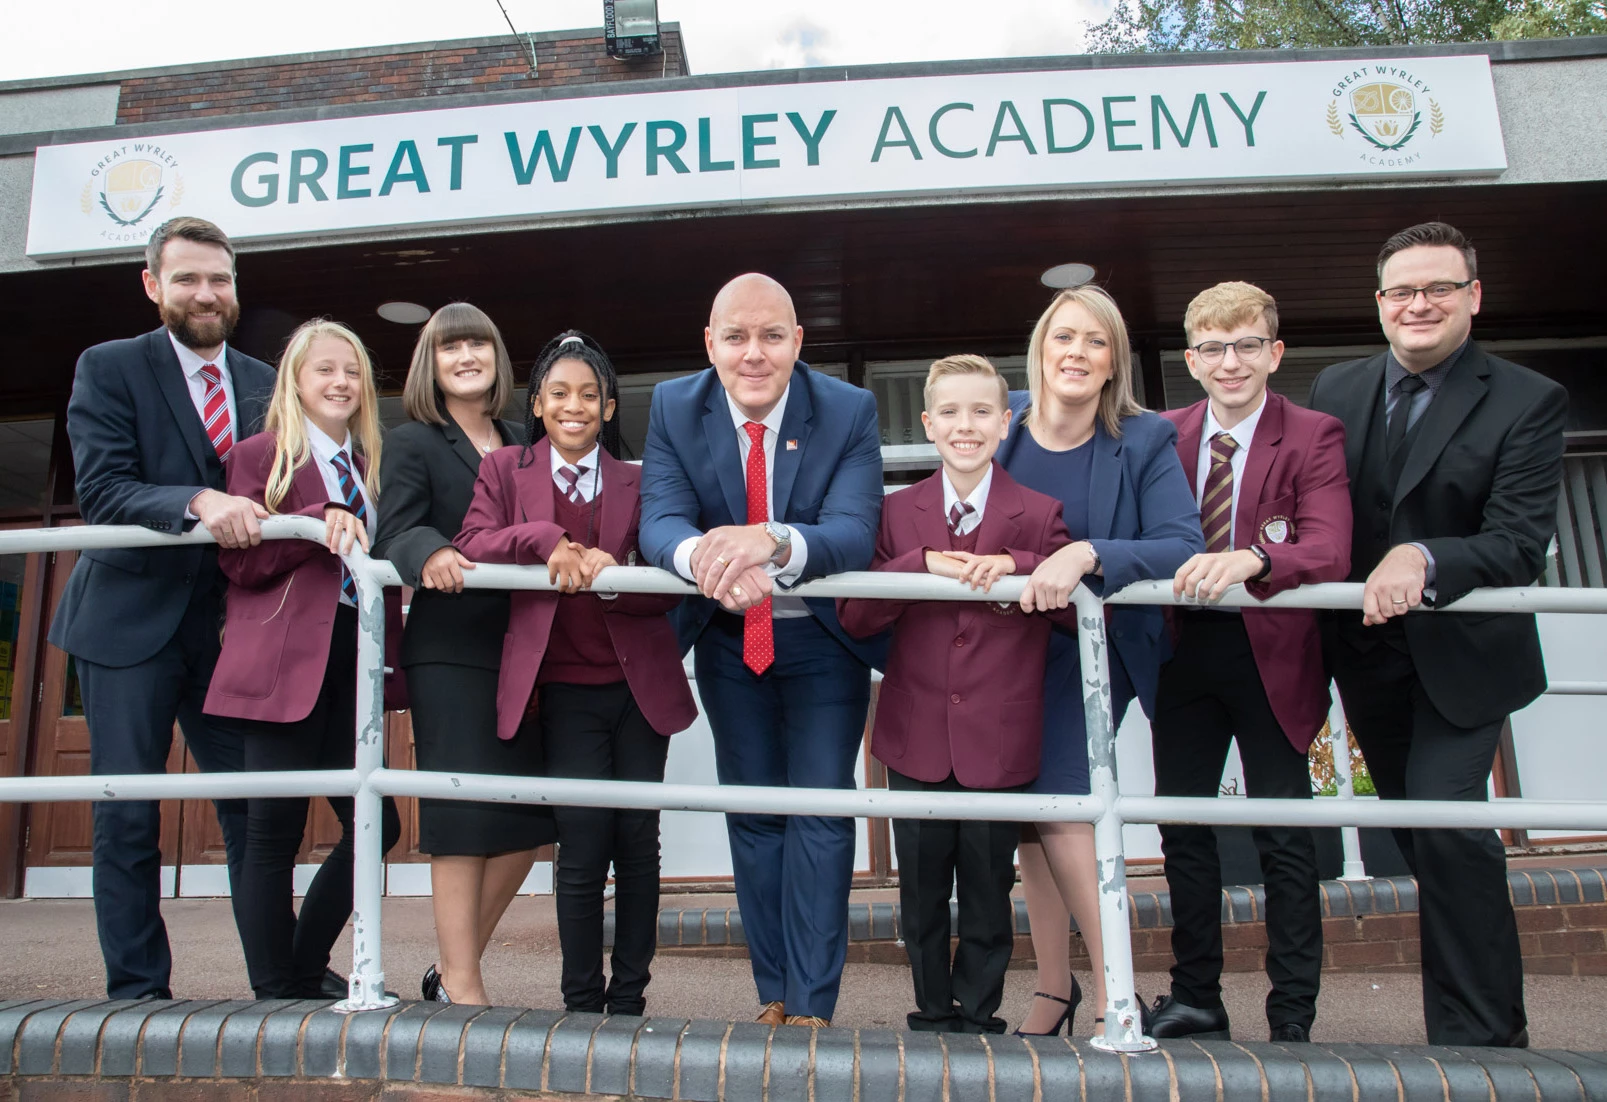 Great Wyrley Academy